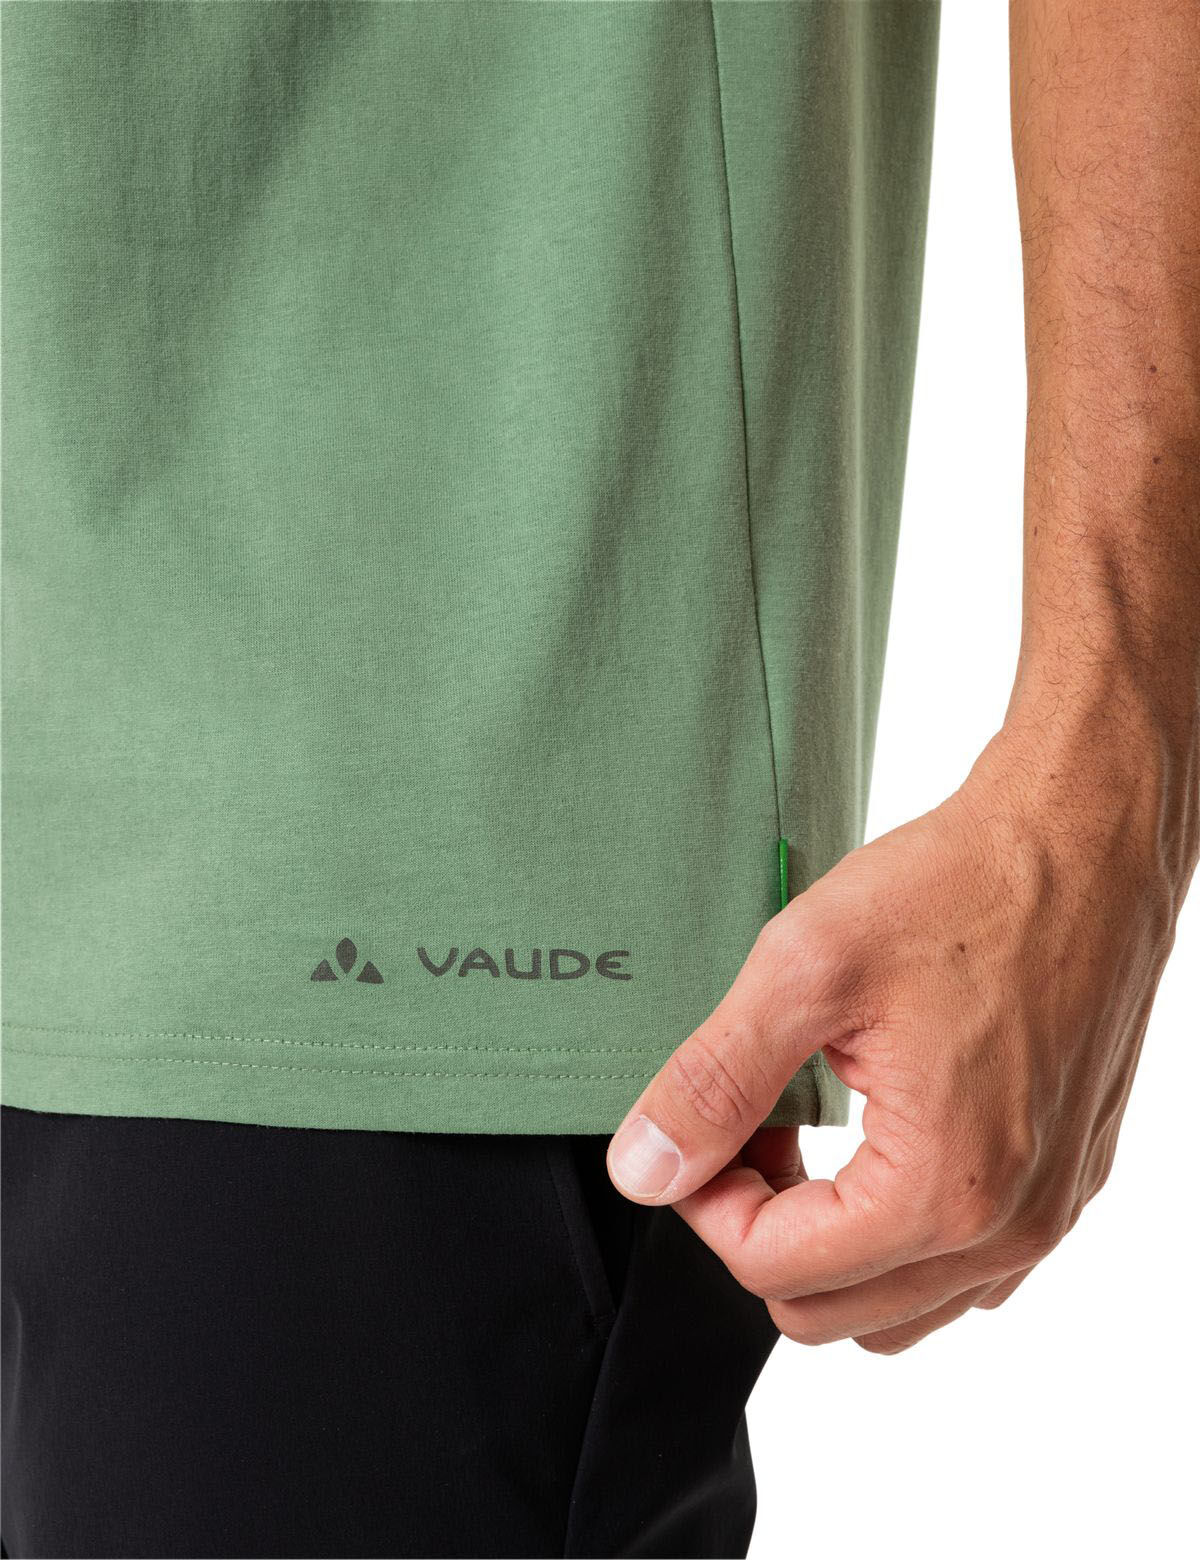 Vaude Me Cyclist T-Shirt V willow green XL